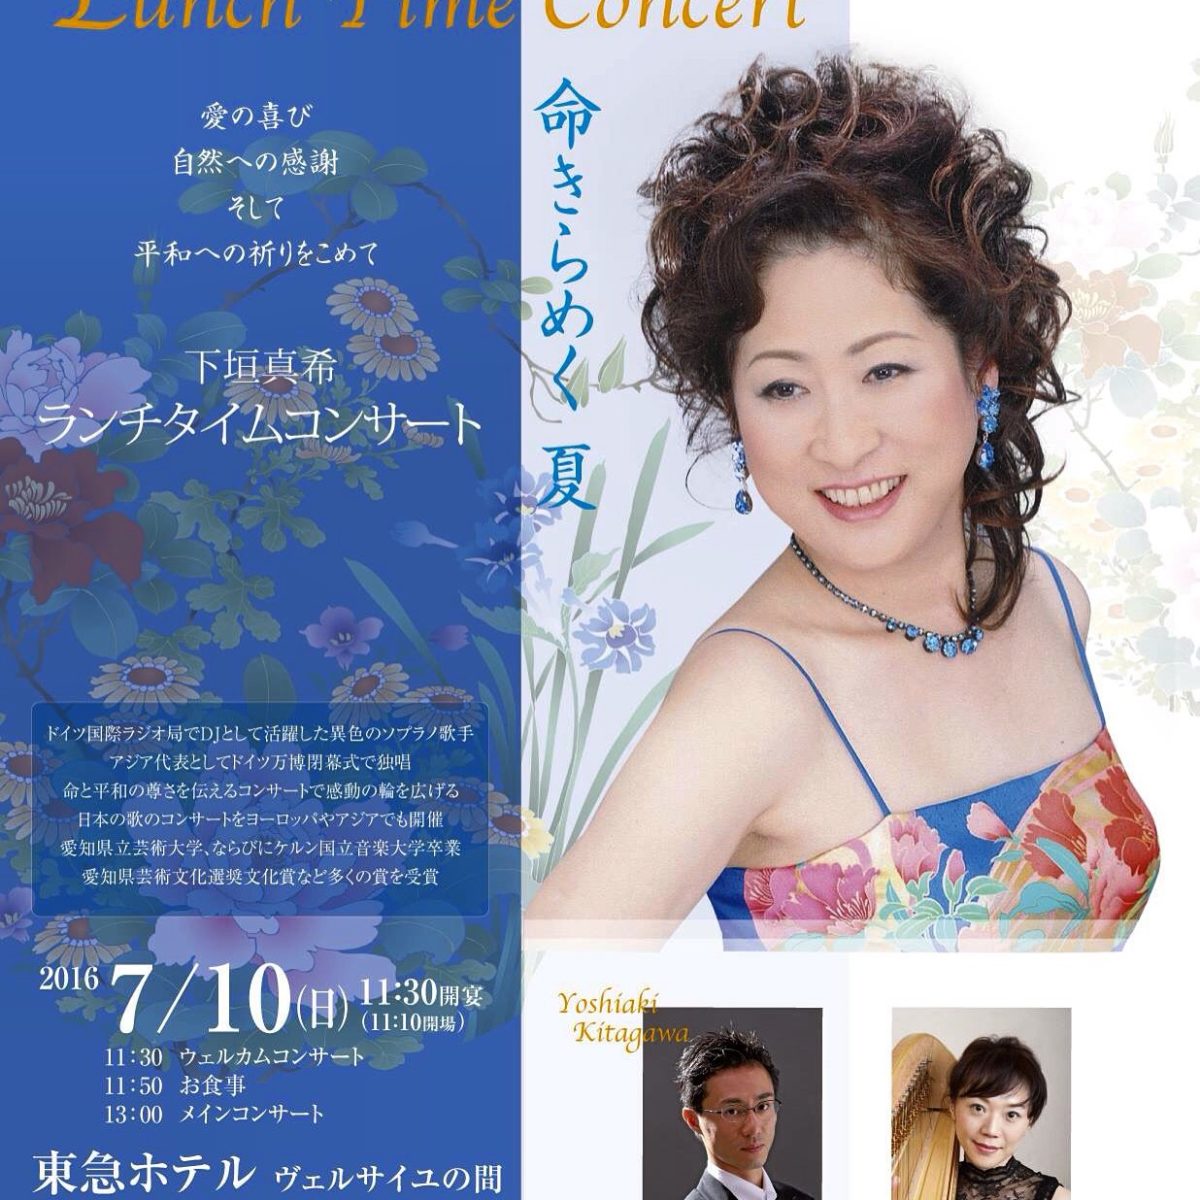 soprano maki shimogaki lunch concert 2016 07 10 2